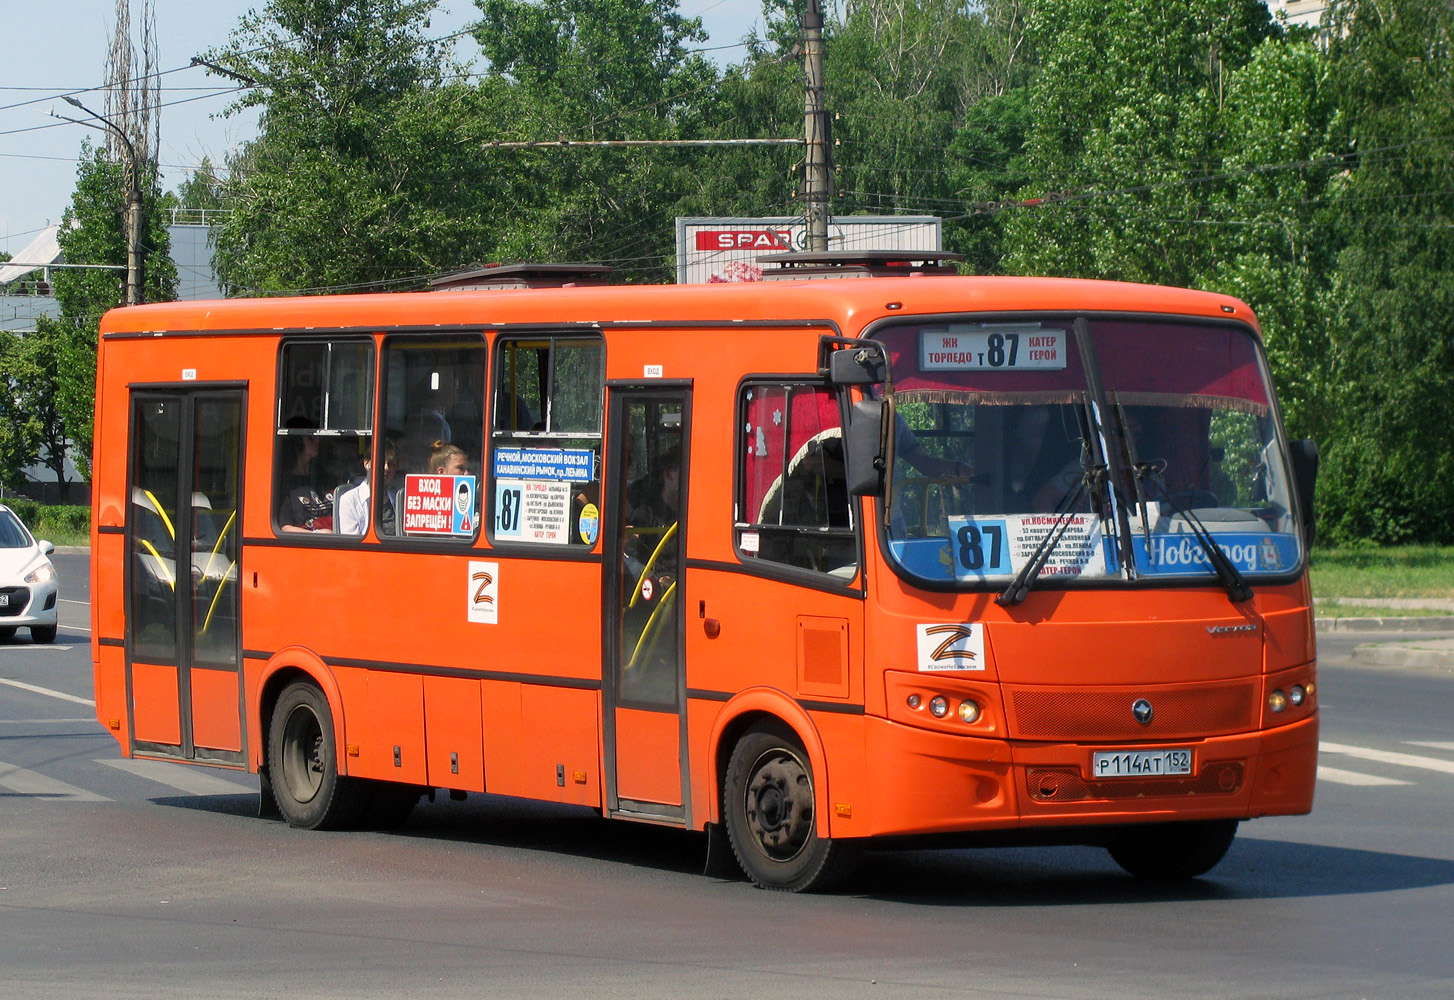 Ніжагародская вобласць, ПАЗ-320414-05 "Вектор" № Р 114 АТ 152